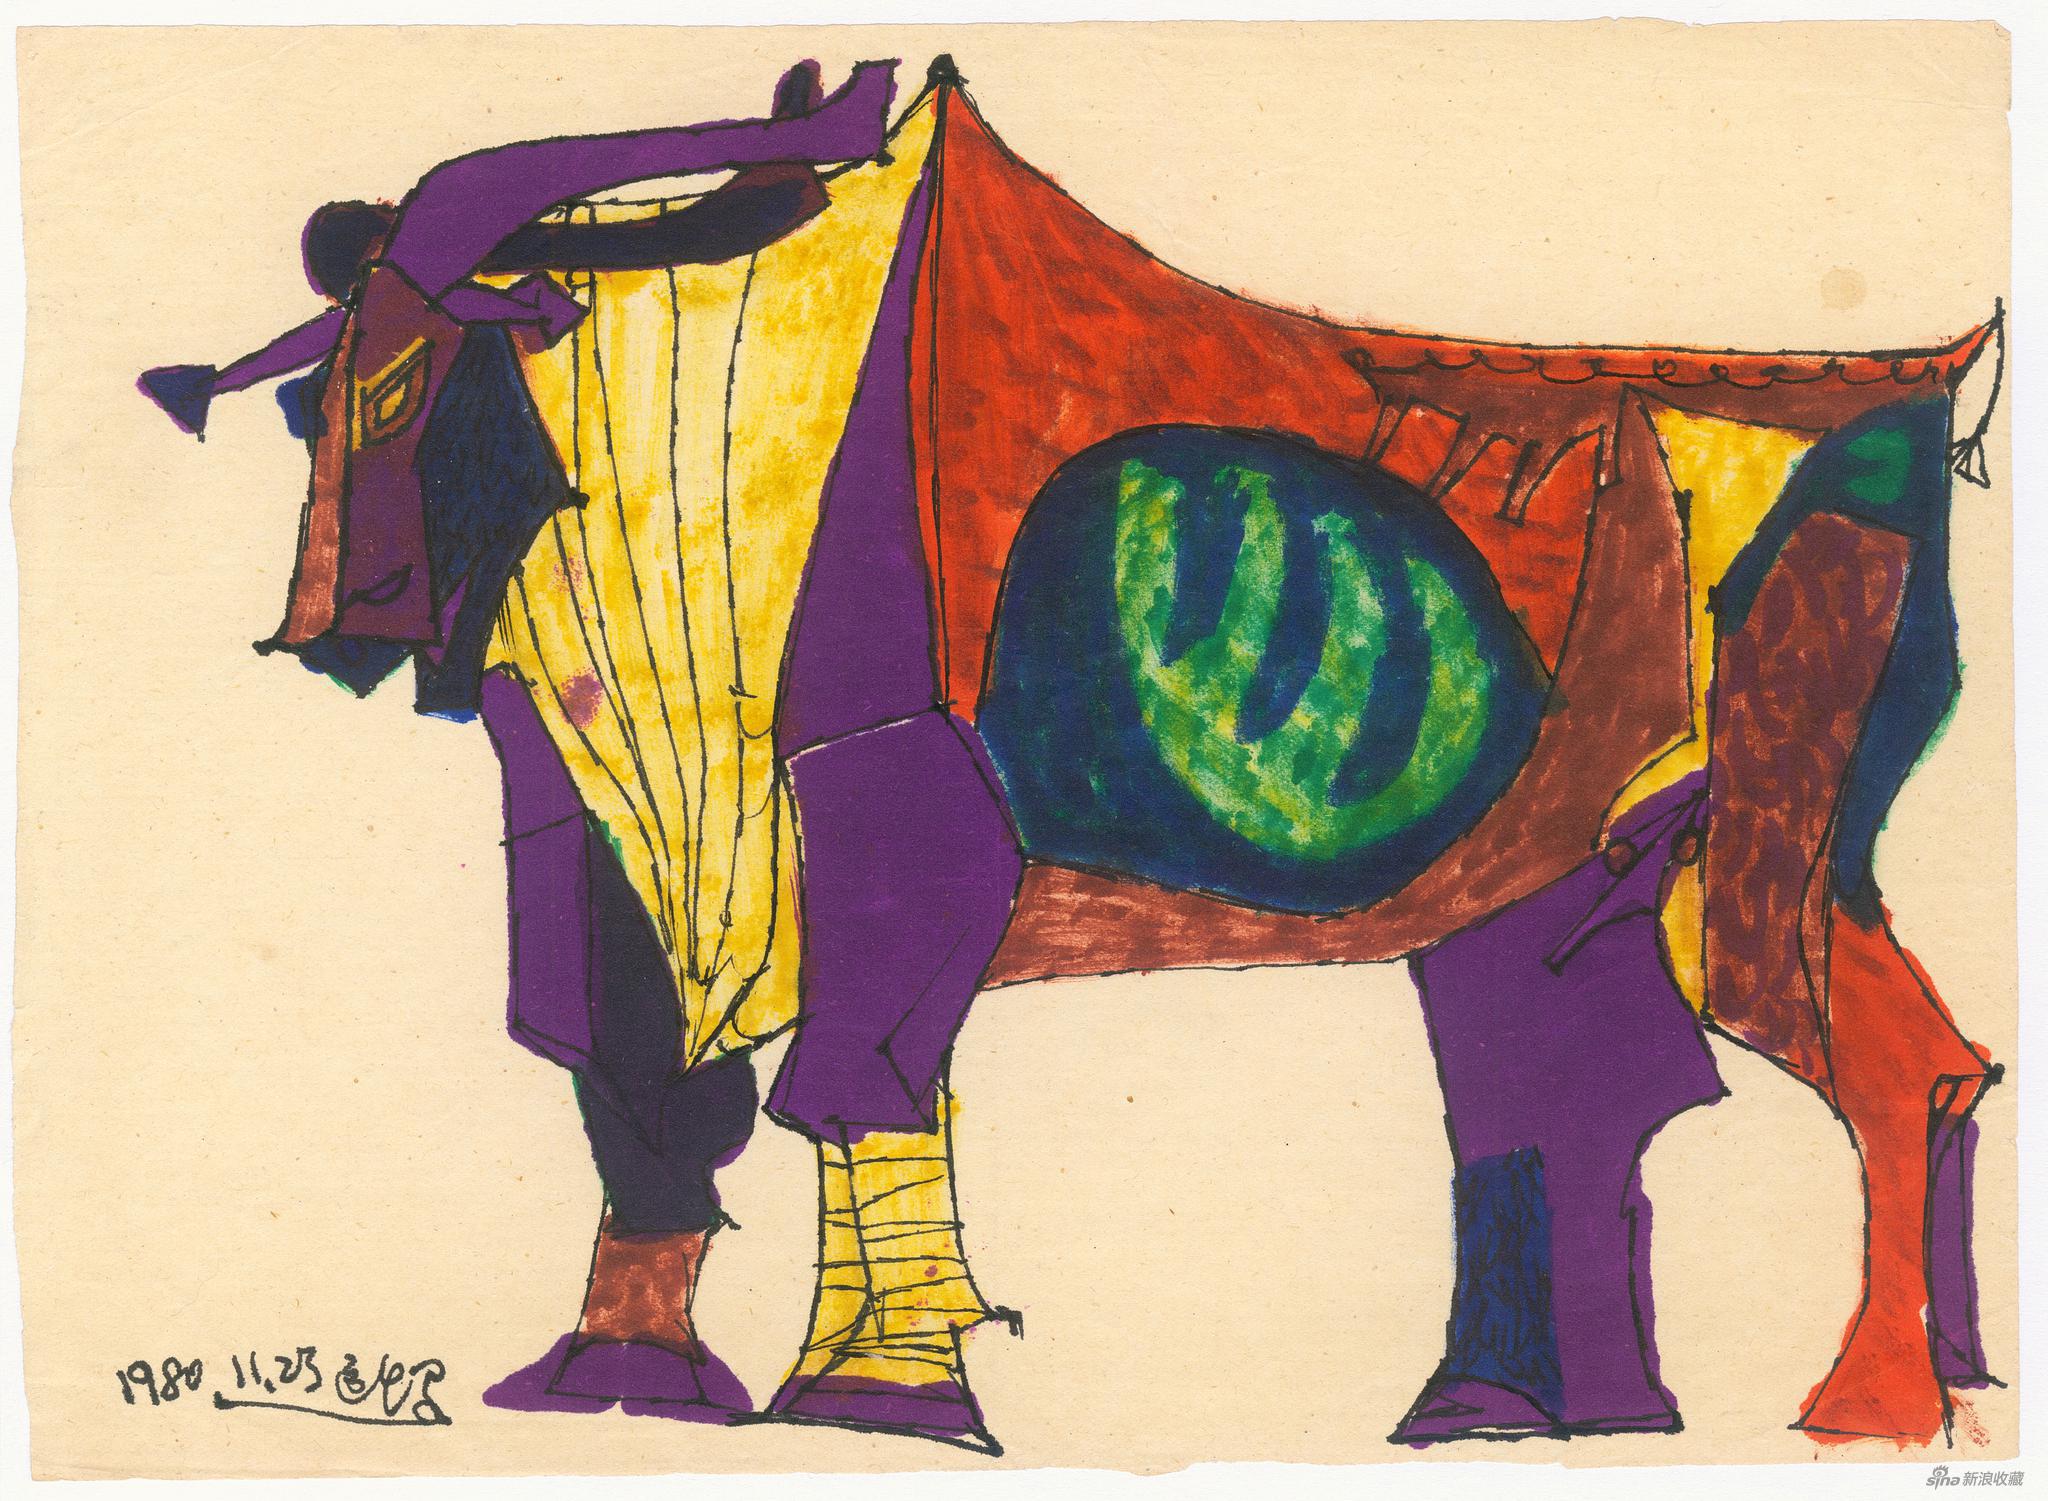 牛（室宿），纸本水彩、钢笔，19.5x27cm， 1980